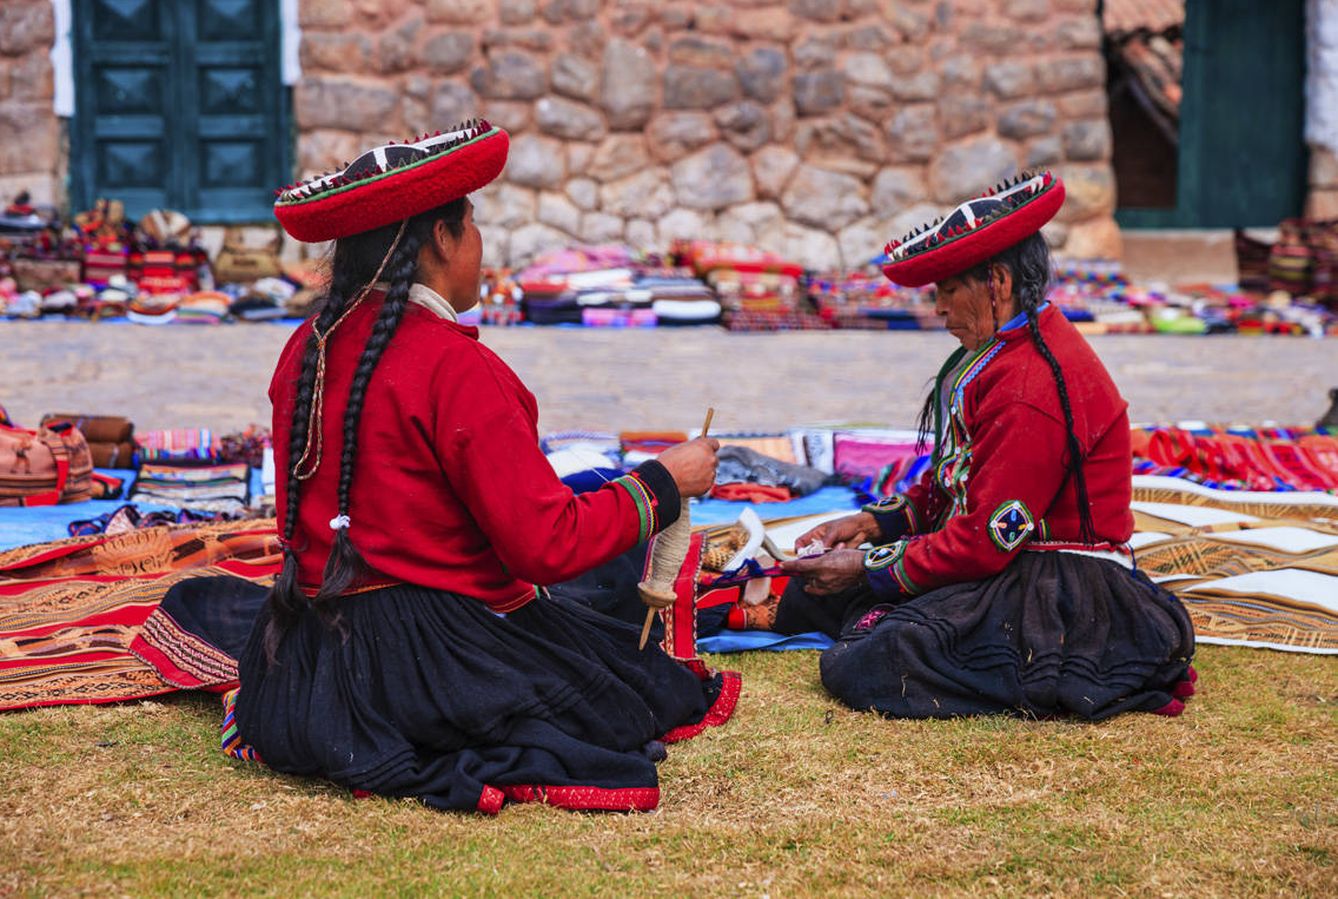 Mercado de artesanía en Perú